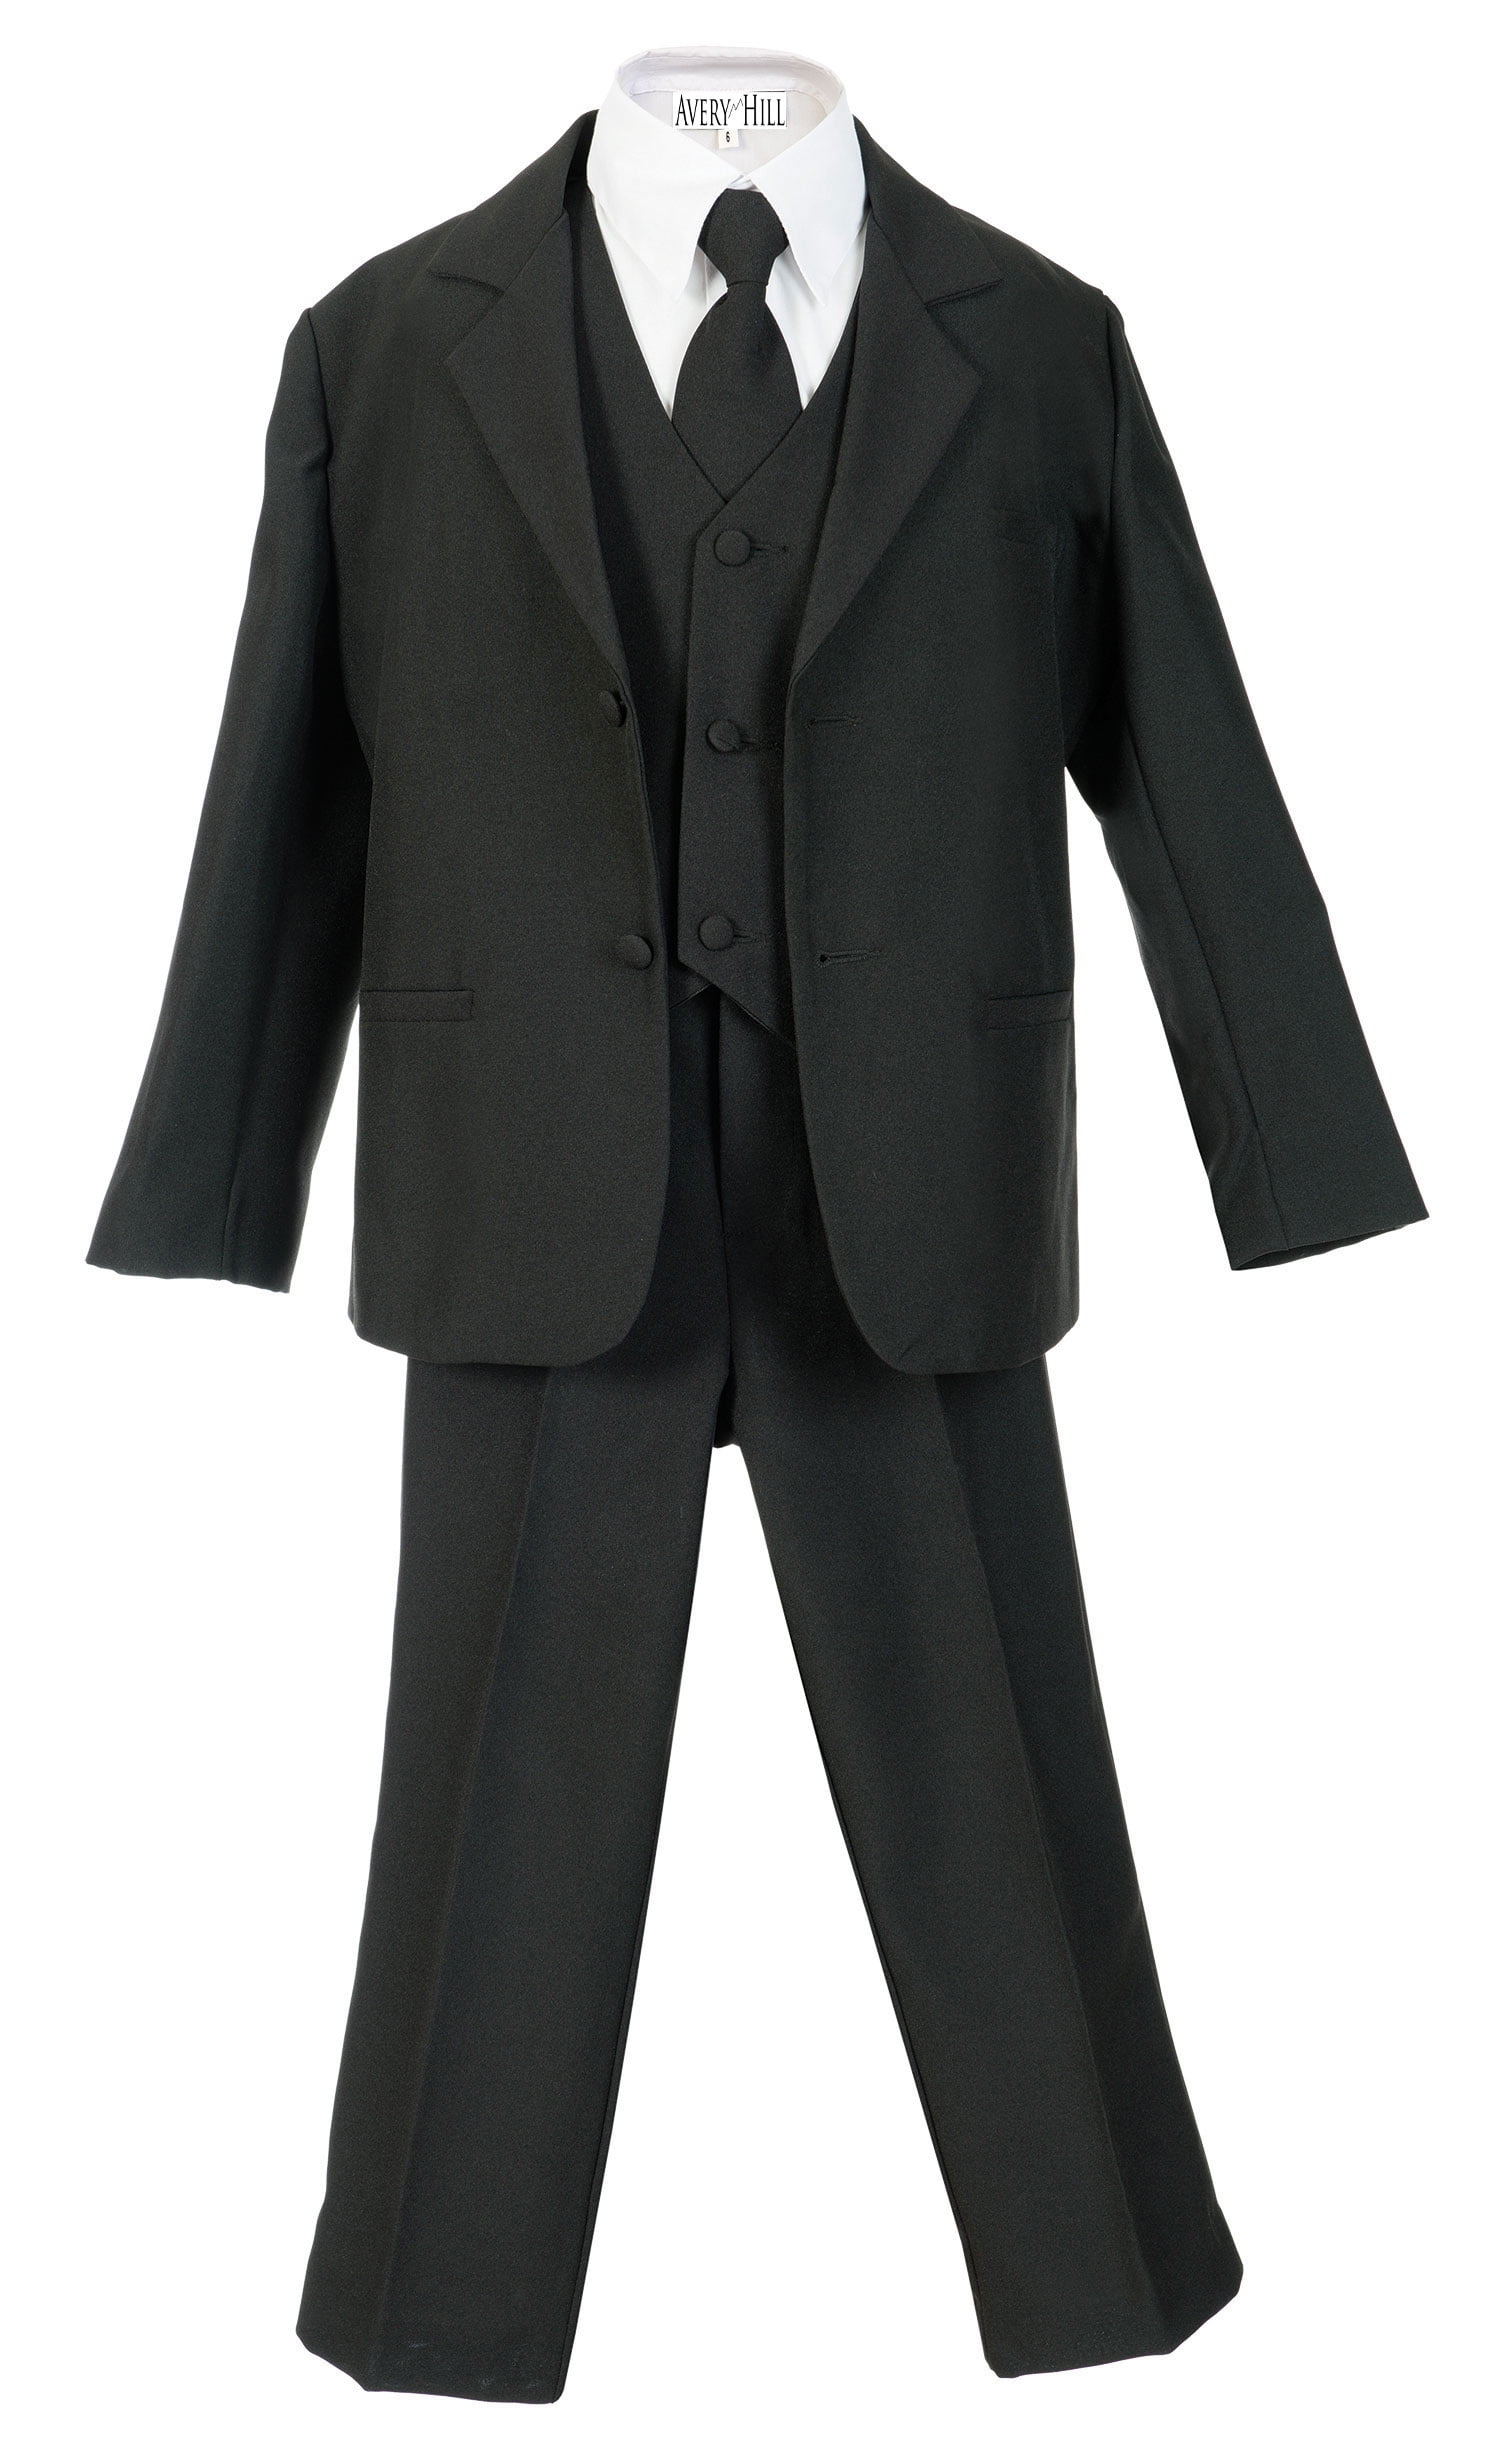 Toddler Boys Formal Suit Pinstripe 5 pcs Set Jacket Dress Shirt Vest Tie Pants 